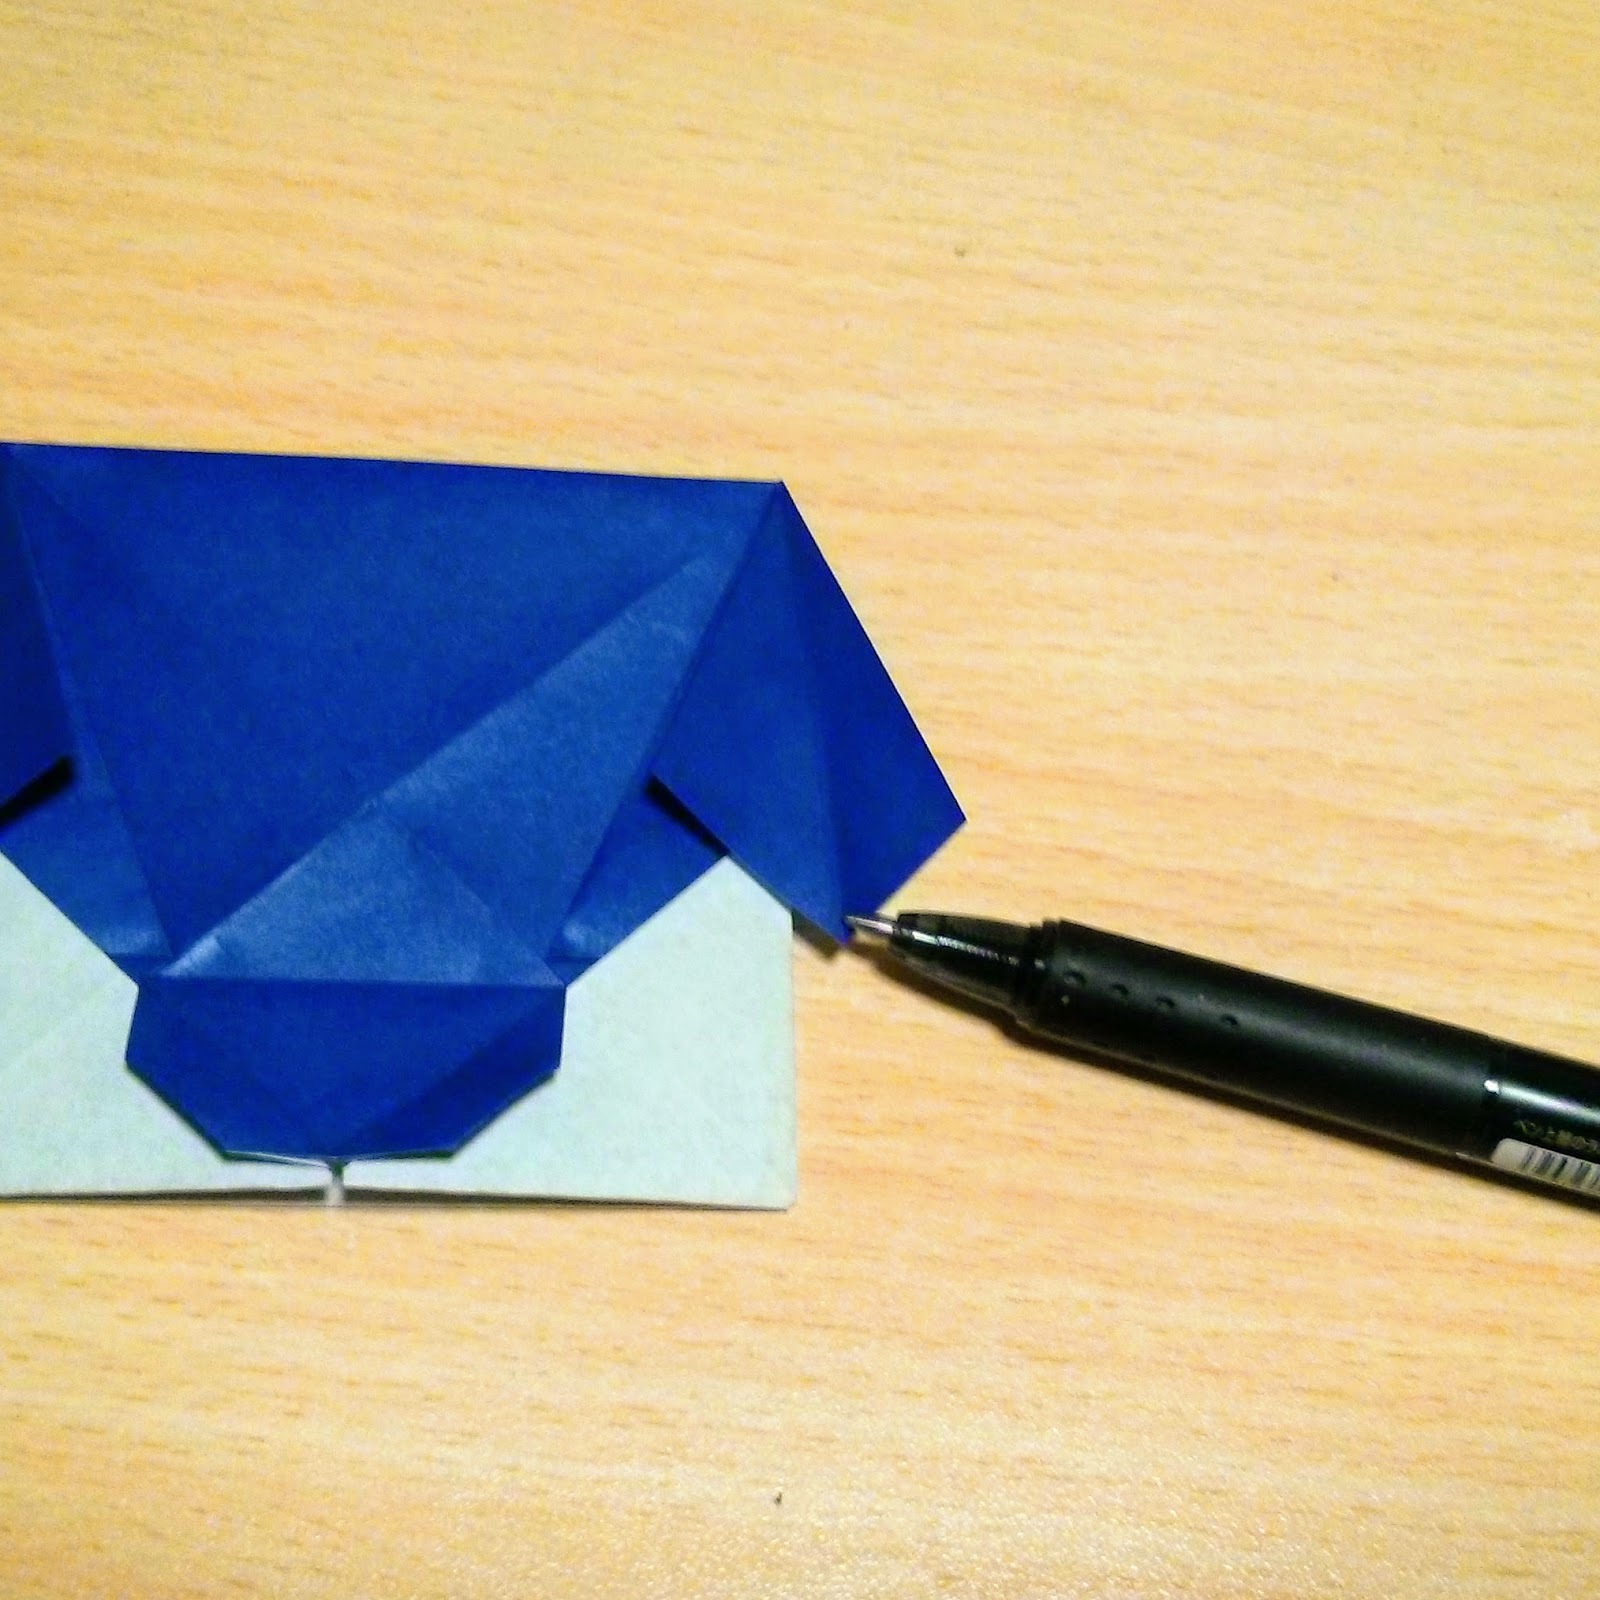 折り紙で作れる 犬 シリーズまとめ 簡単でかわいい折り方13選をご紹介 Kurashi No